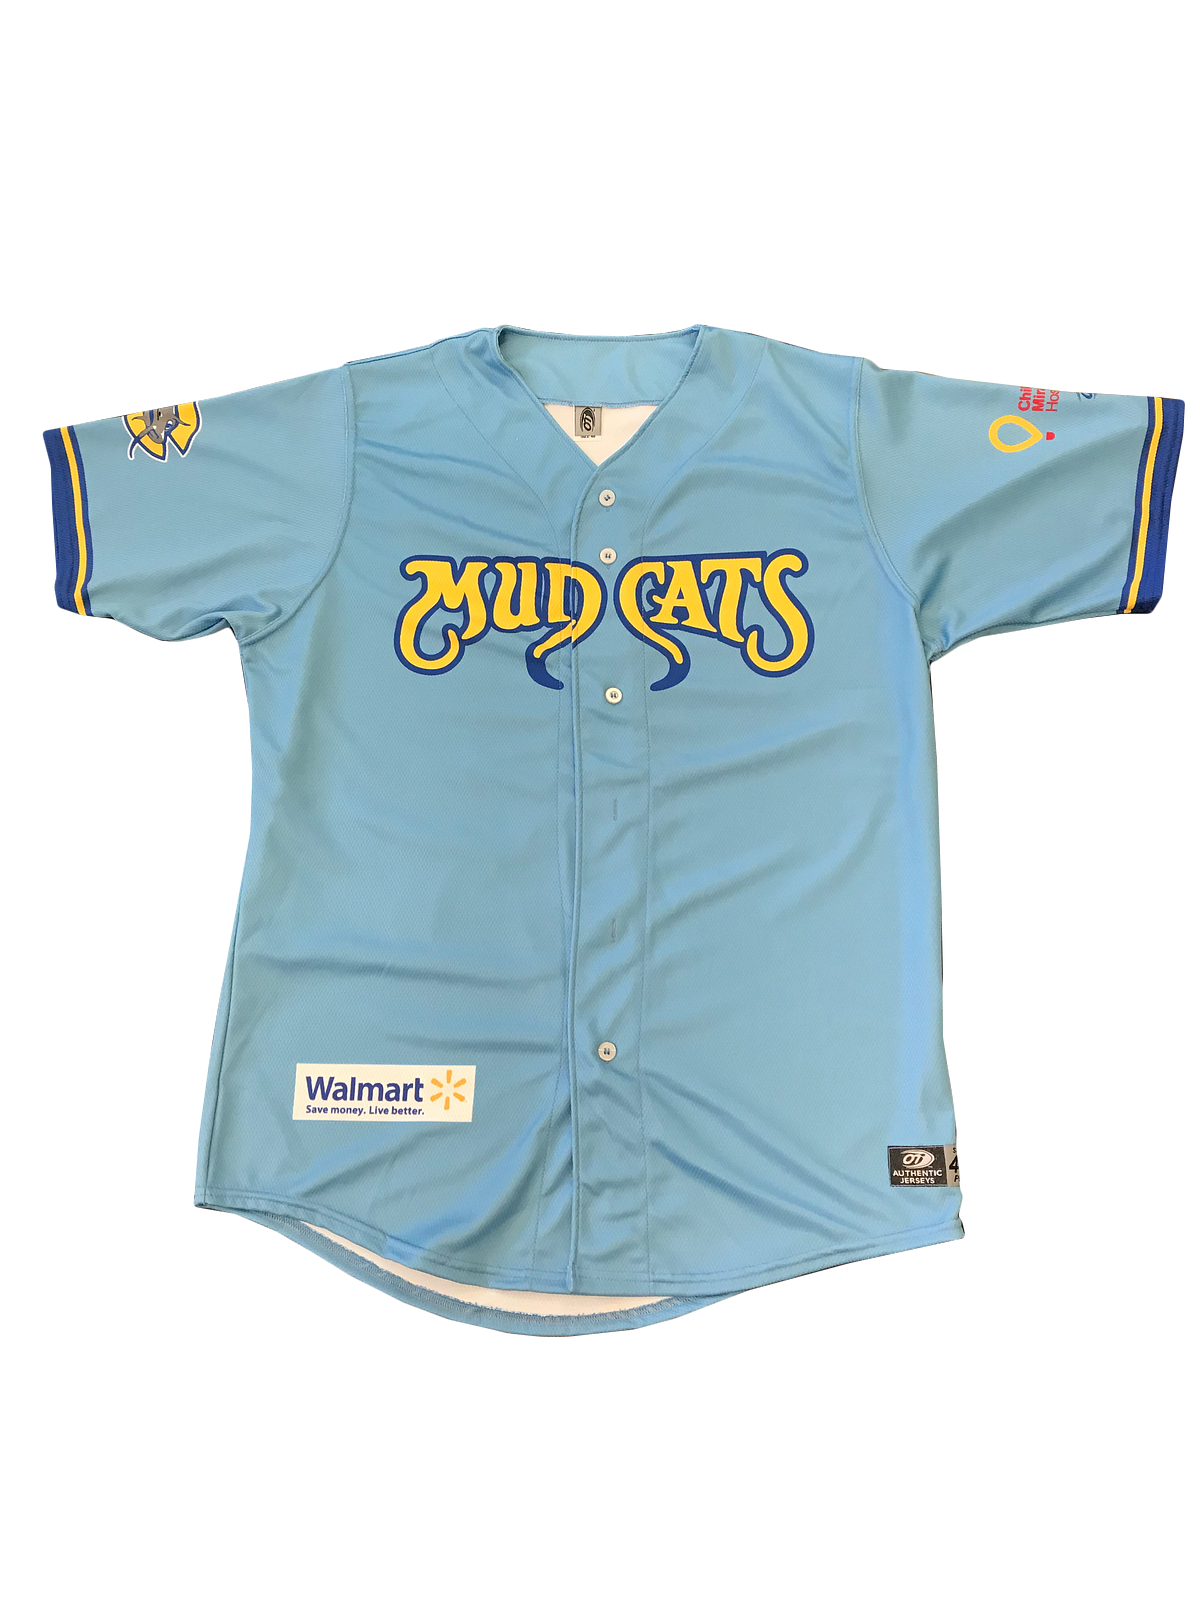 carolina mudcats jersey